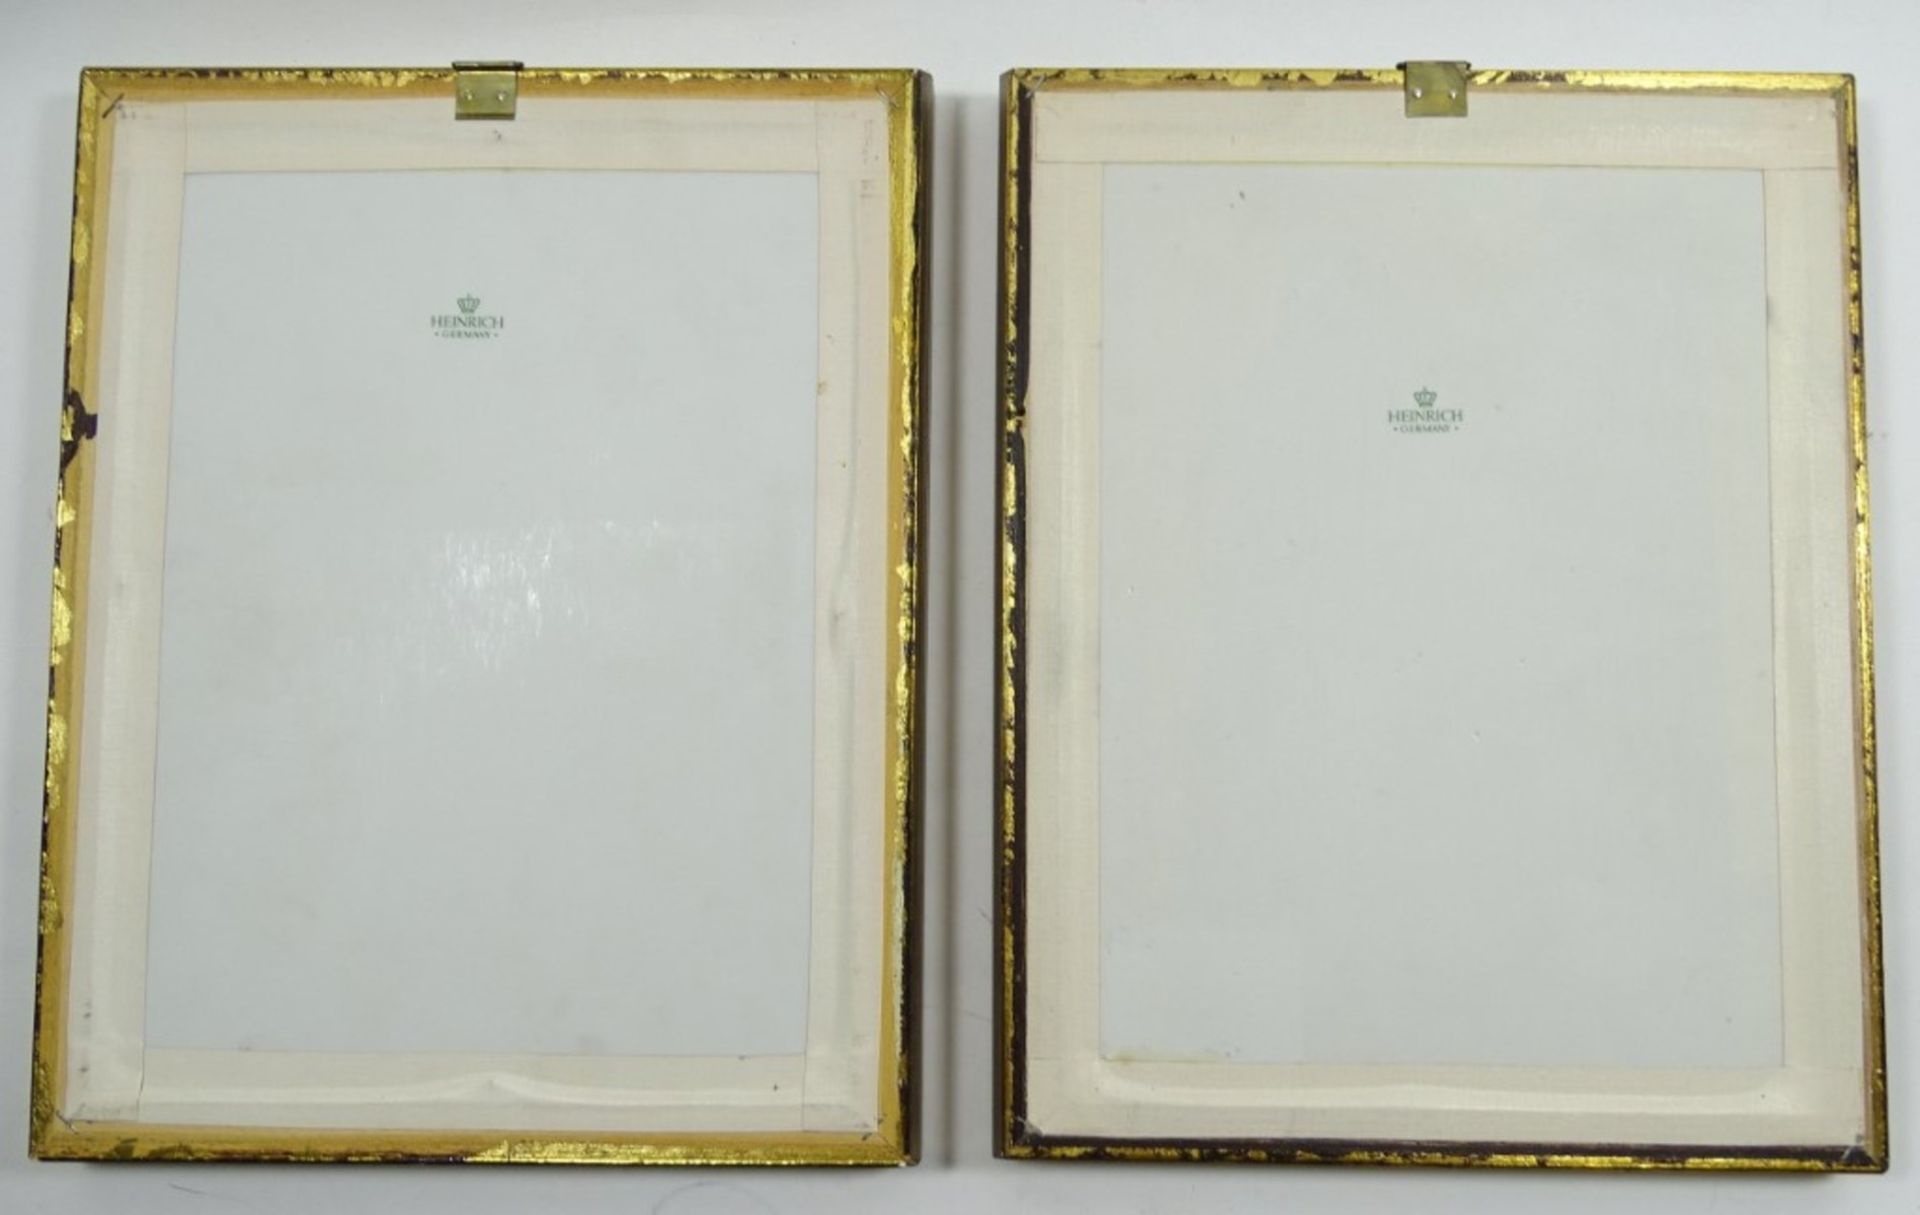 2 Porzellan-Bilder, gerahmt, mit Vogeldarstellungen, Heinrich, je 29 x 22,5 cm, Rahmen mit kleinen - Bild 4 aus 6